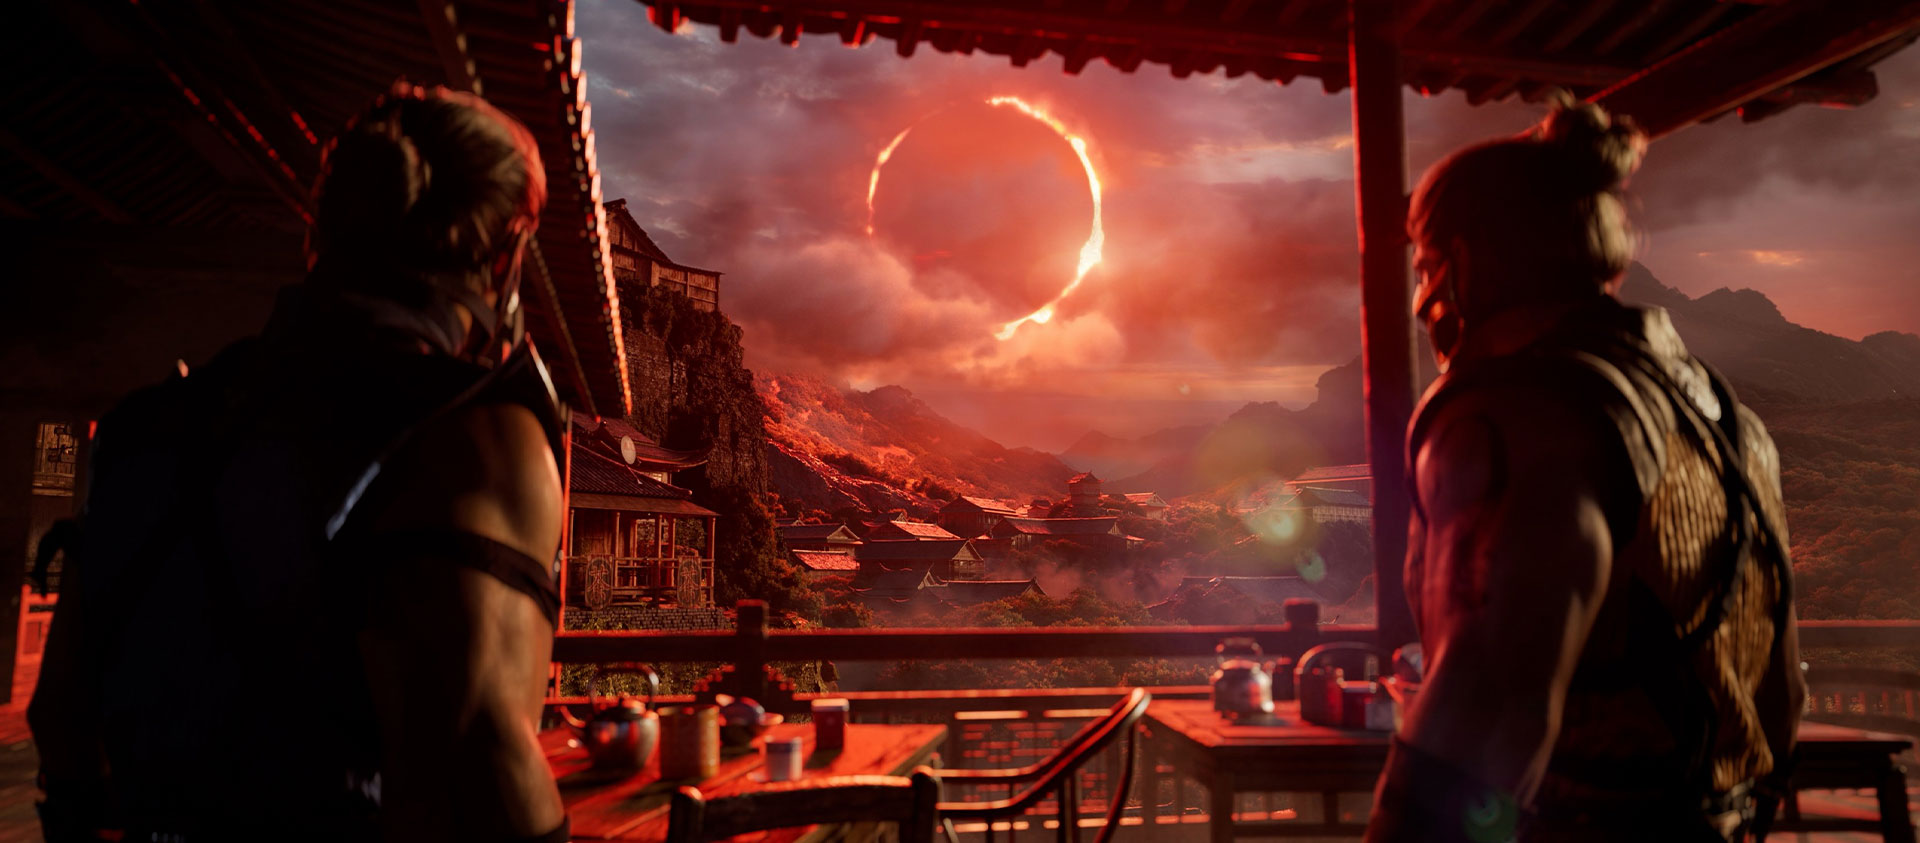 Mortal Kombat 1, to karakterer under et skur stirrer på rød solformørkelse i det fjerne